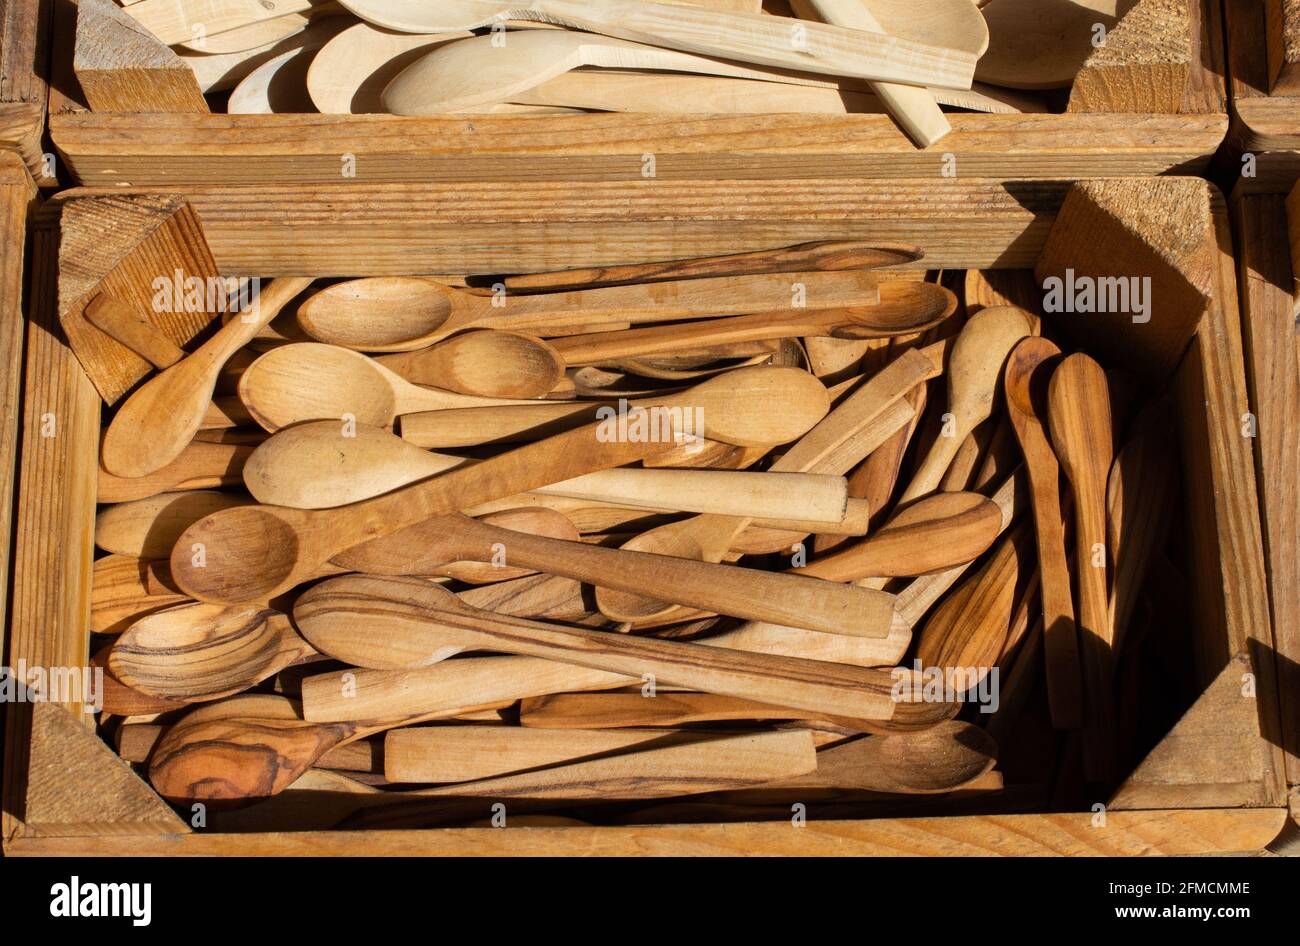 In legno fatti a mano gli utensili da cucina cucchiai da cucina in